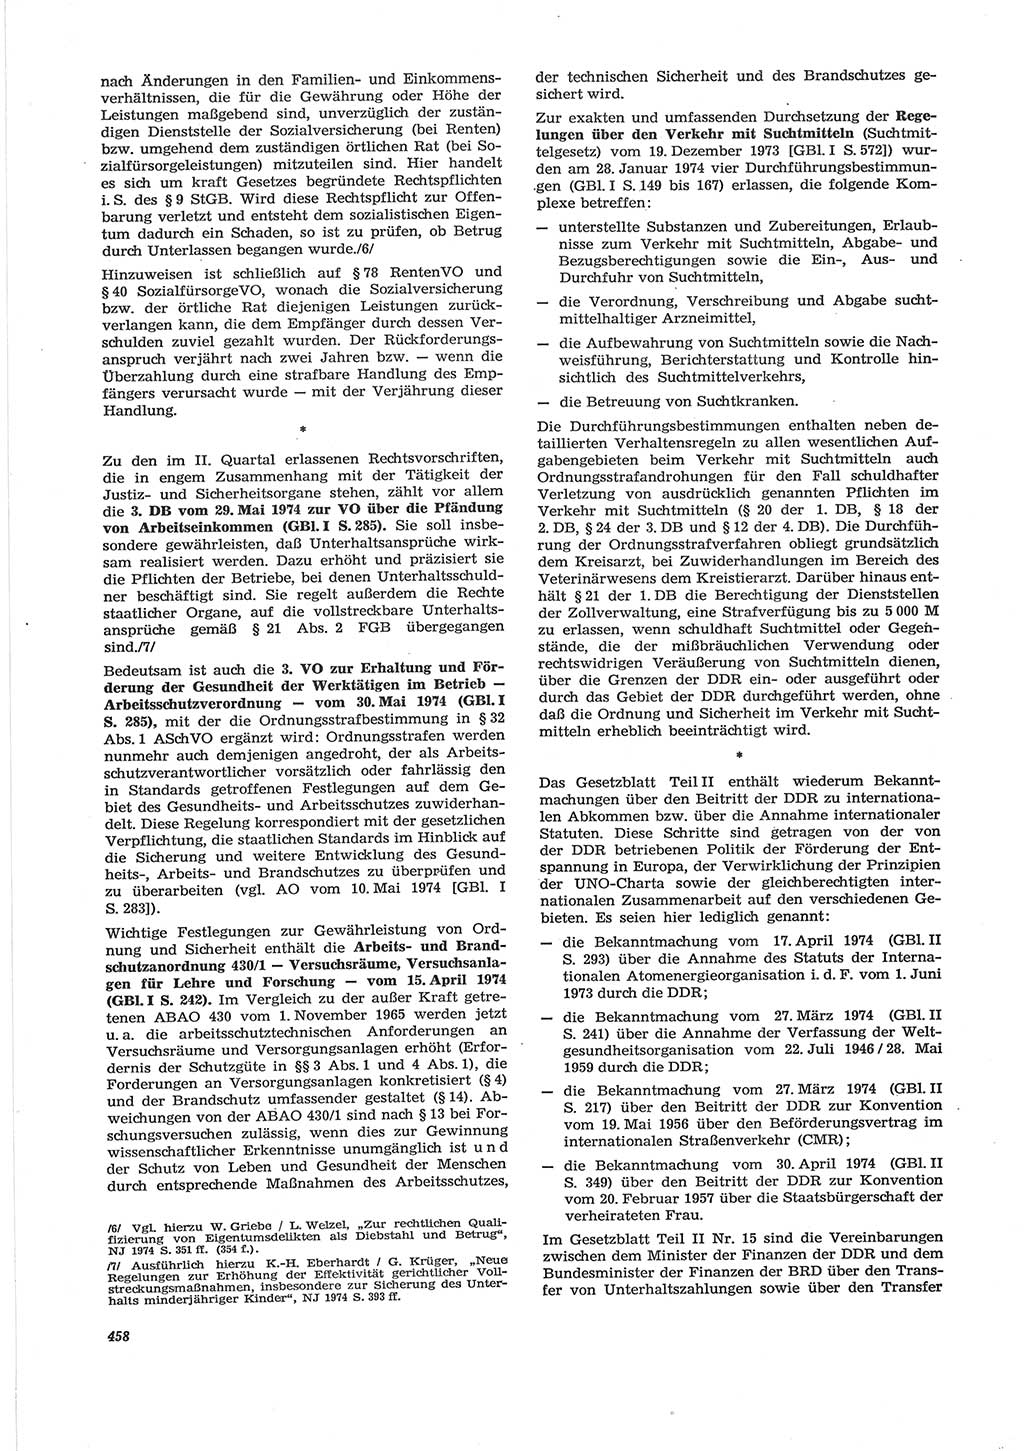 Neue Justiz (NJ), Zeitschrift für Recht und Rechtswissenschaft [Deutsche Demokratische Republik (DDR)], 28. Jahrgang 1974, Seite 458 (NJ DDR 1974, S. 458)